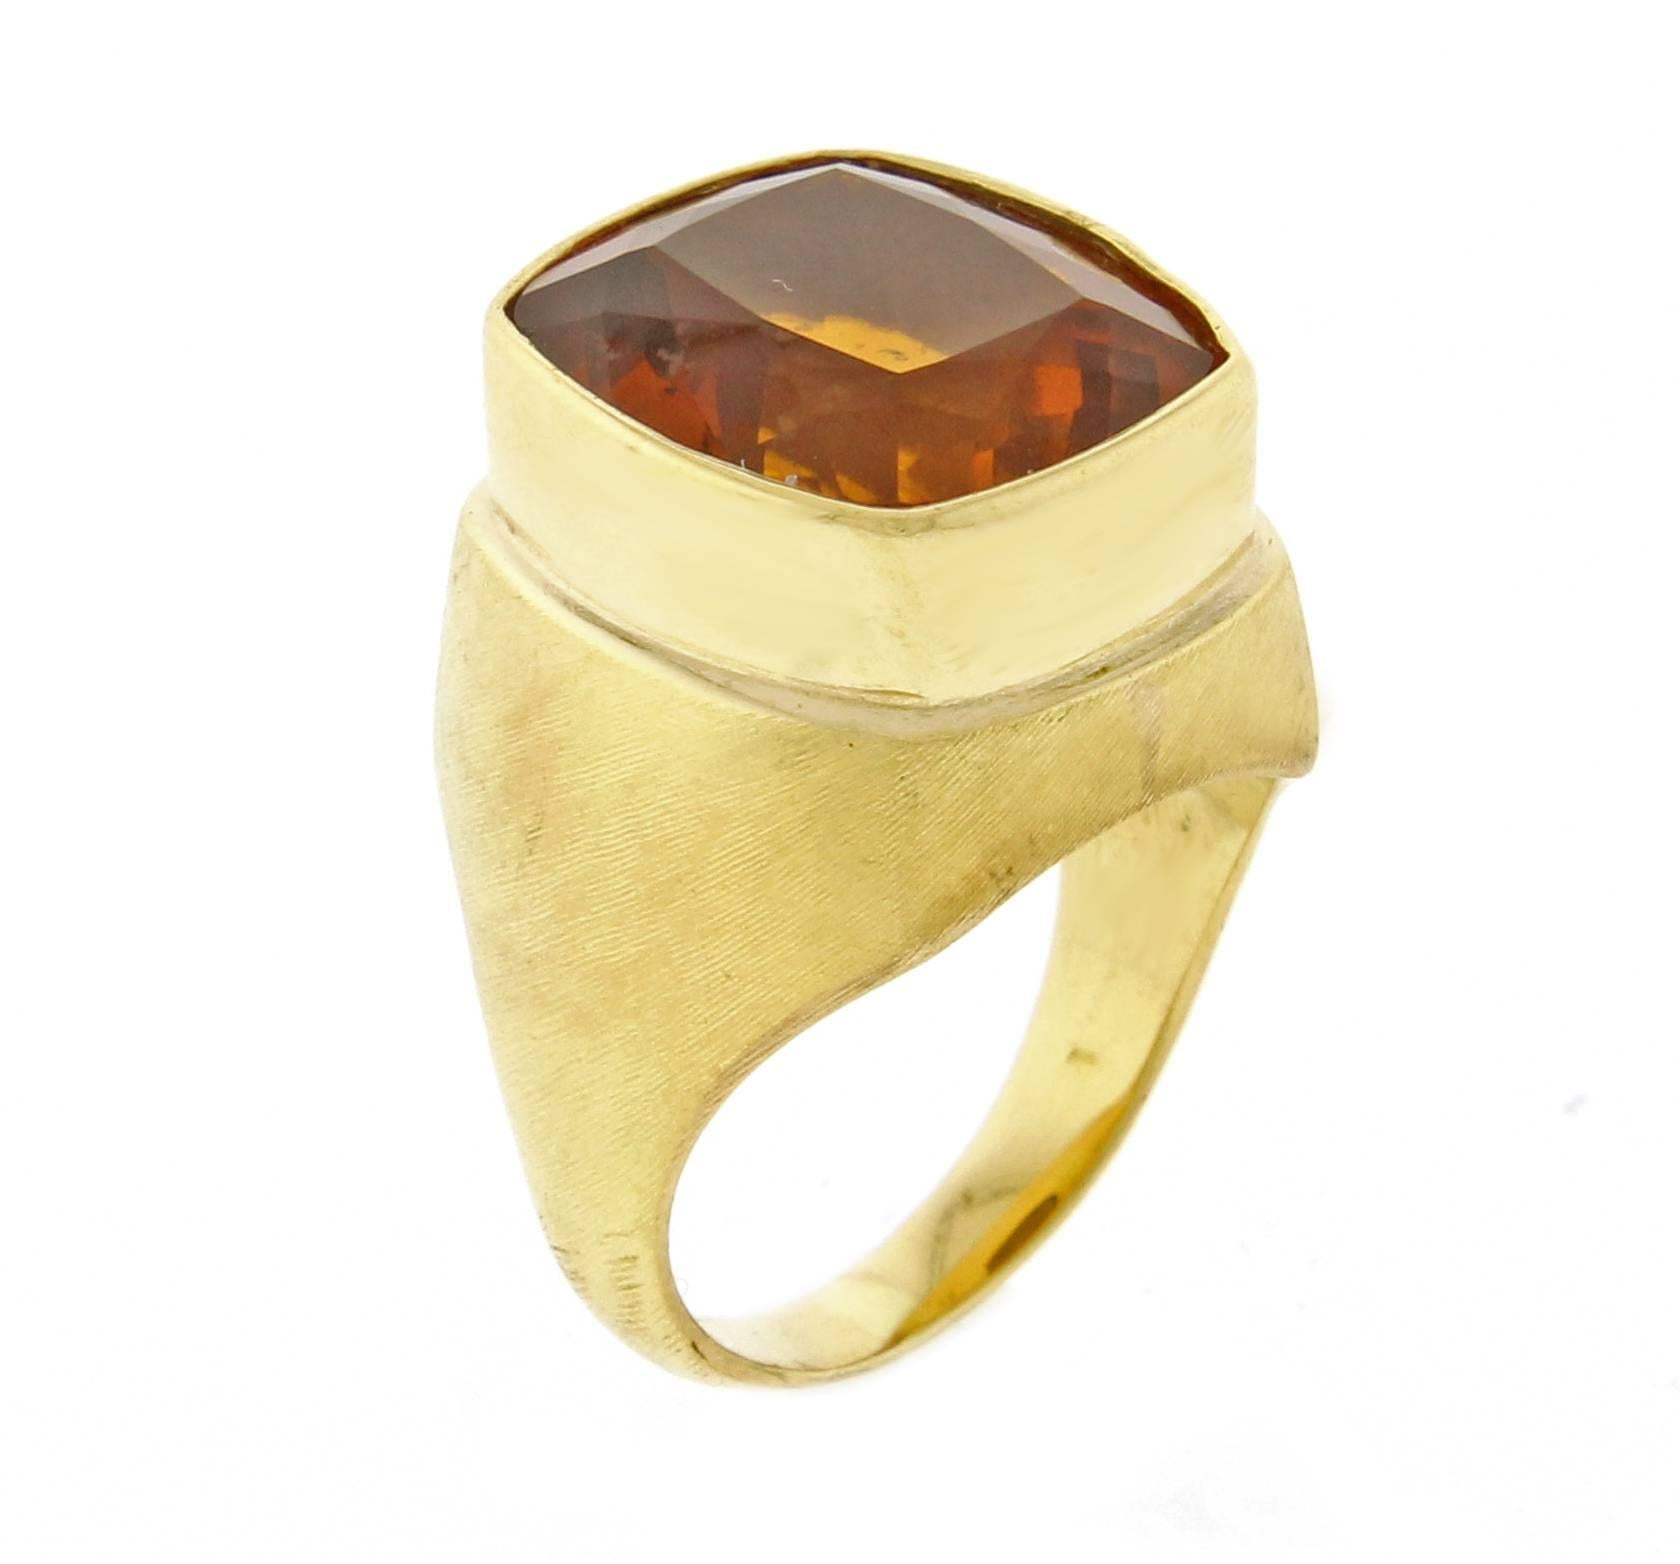 eiliger Ring aus 18 Karat Gold mit Citrin des weltbekannten brasilianischen Juweliers Haroldo Burle Marx (1911-1991). Der Ring ist mit einem 15*12,5 mm großen Citrin im Kissenschliff mit einem Gewicht von 11 Karat besetzt.  Größe 6 einstellbar